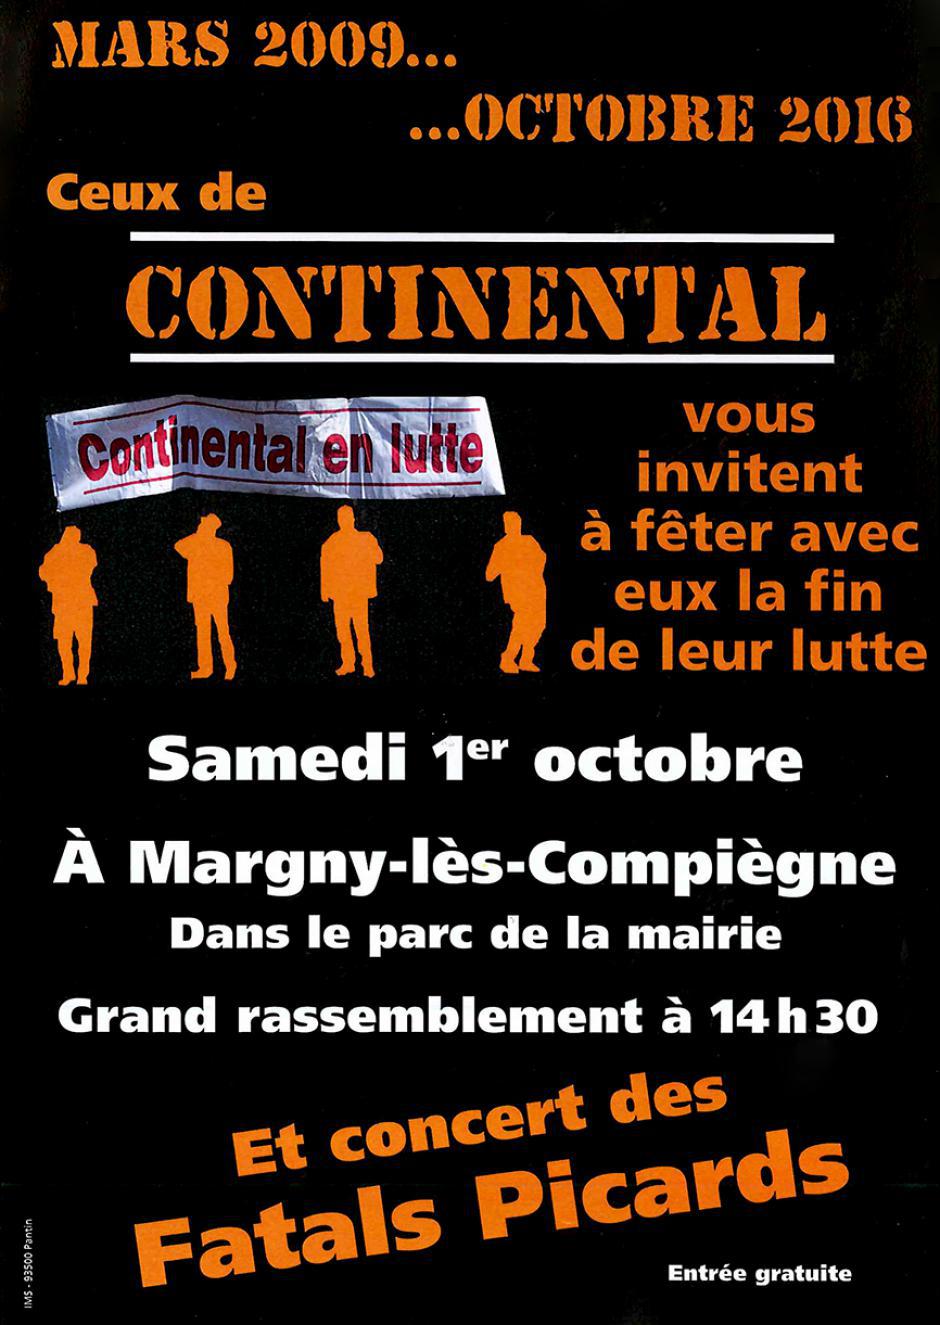 Fête de la fin de la lutte des Conti - Margny-lès-Compiègne, 1er octobre 2016